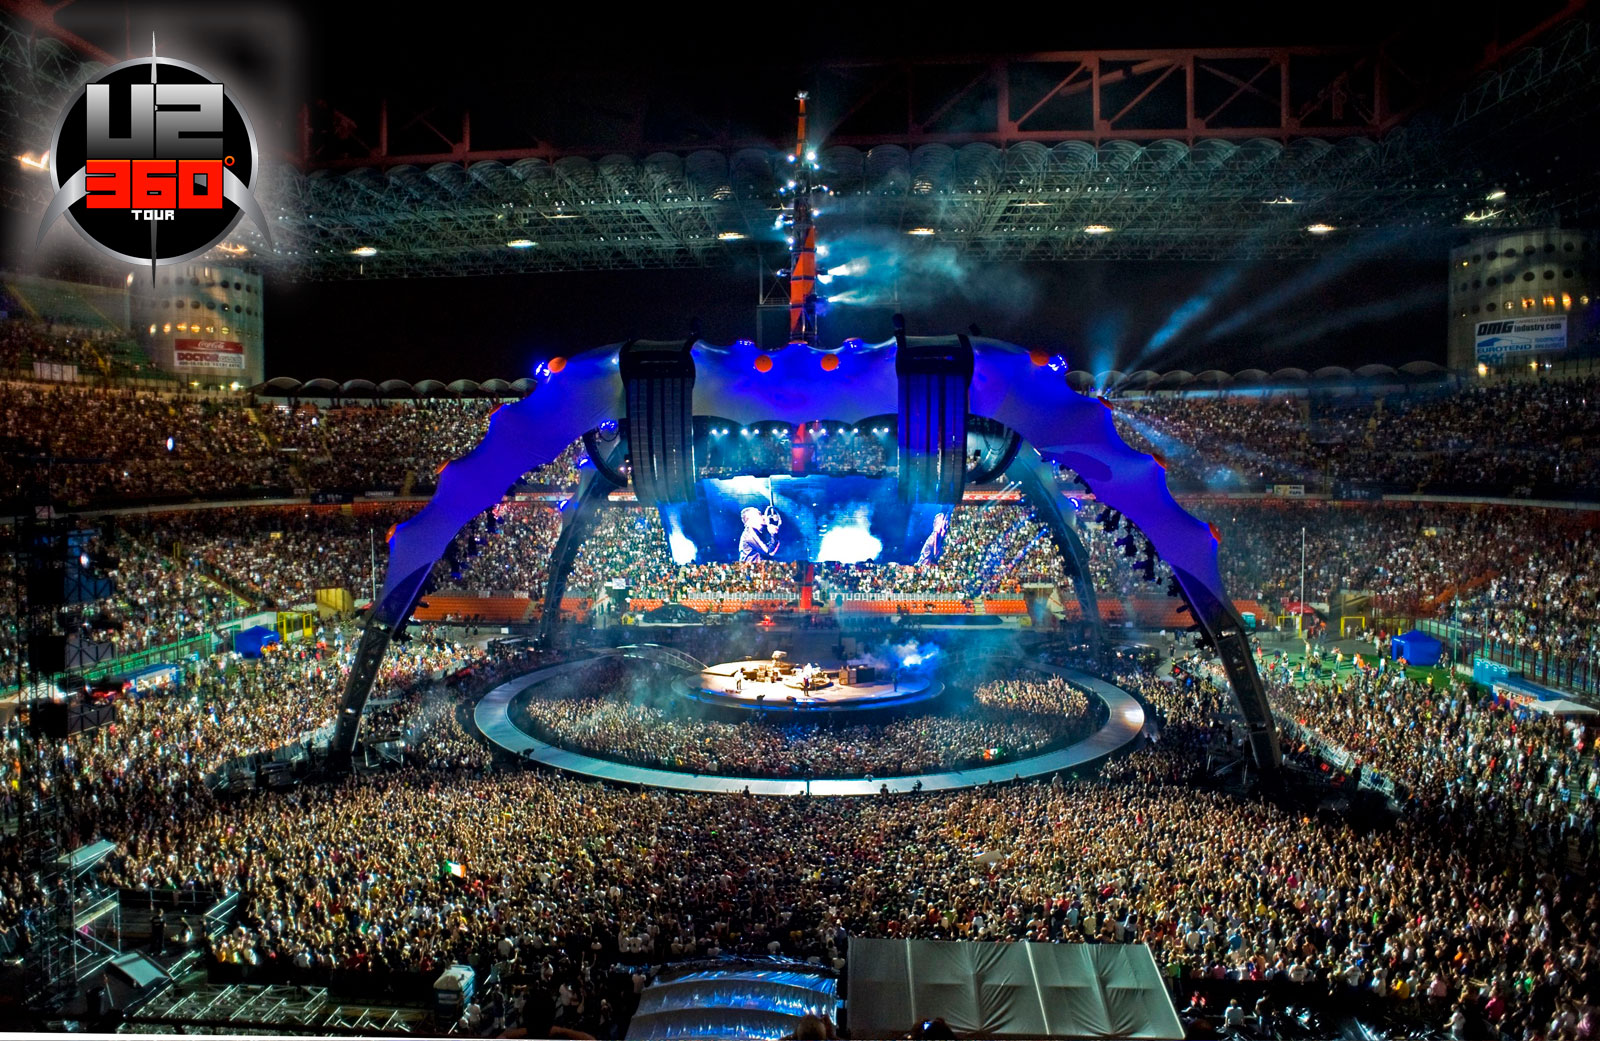 U2 performs at Rose Bowl during their U2 360 Tour on 